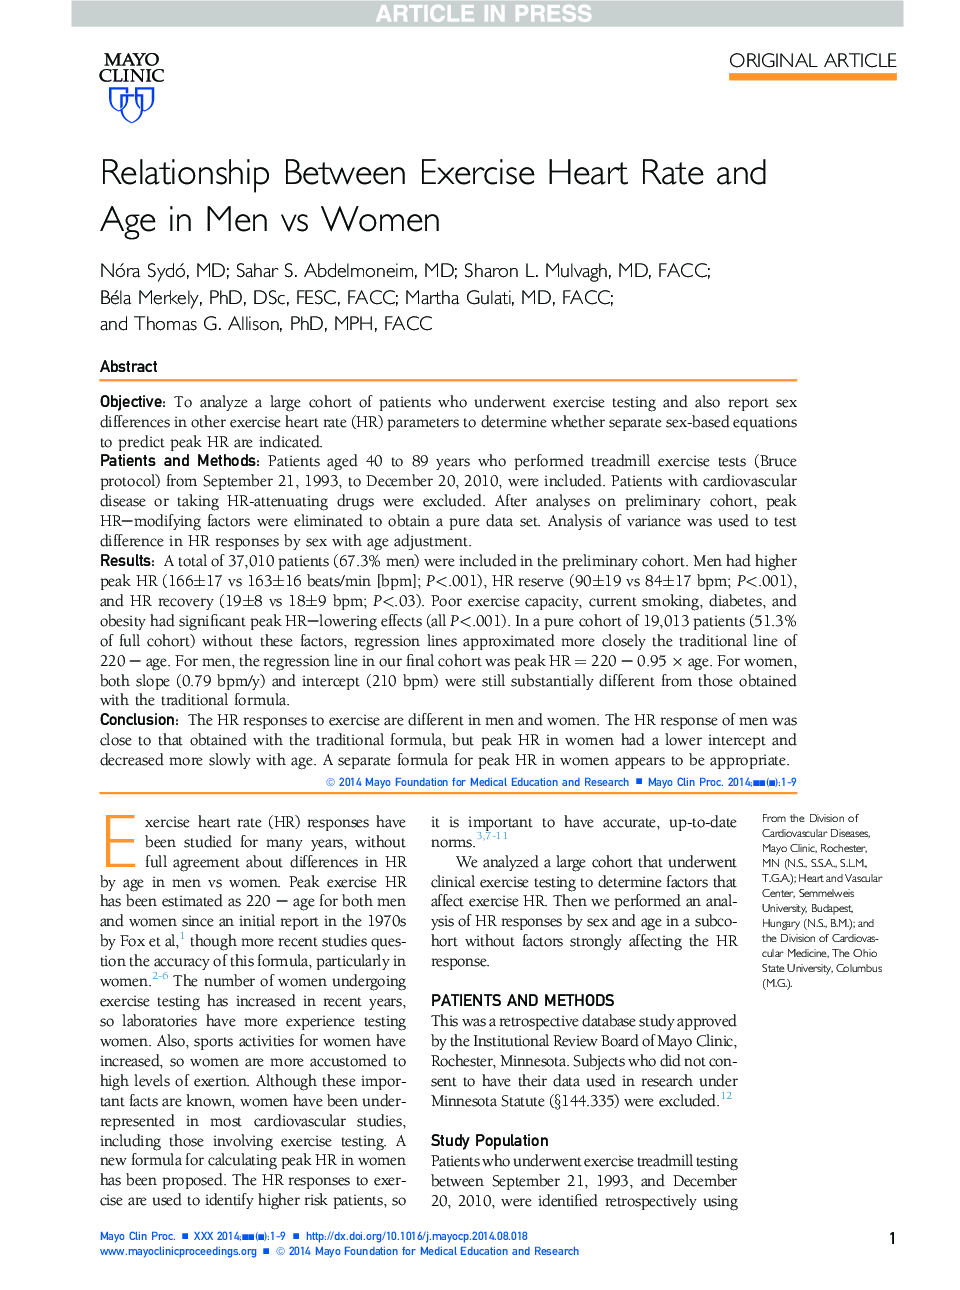 رابطه بین میزان ضربان قلب و سن در مردان و زنان 